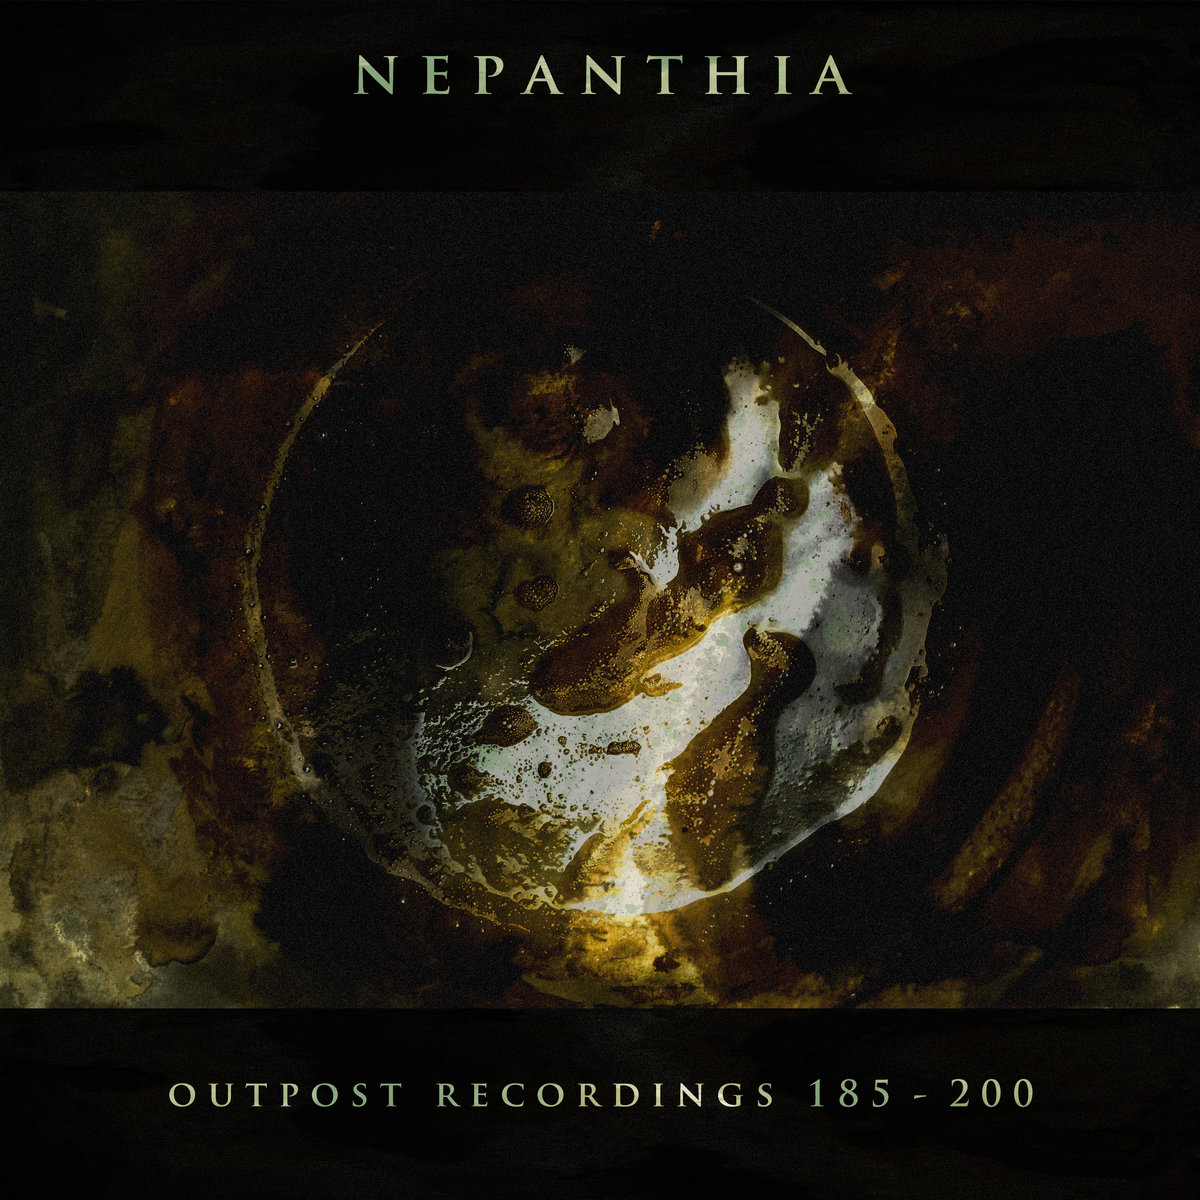 NEPATHIA - OUTPOST RECORDINGS 185 - 200